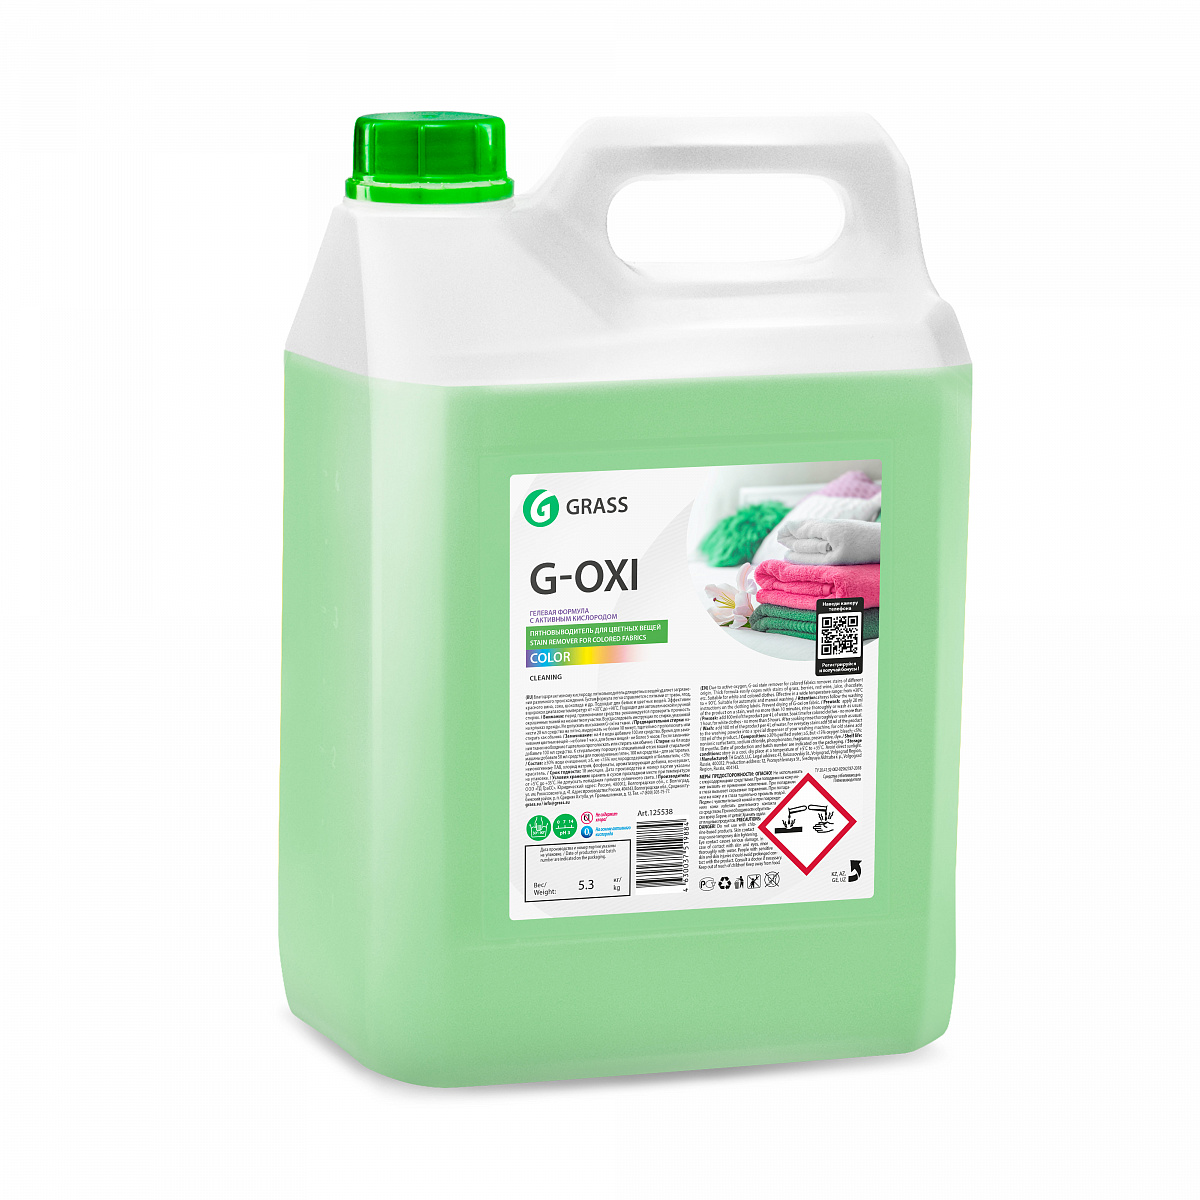 Пятновыводитель Grass G-Oxi для цветных вещей с активным кислородом (5,3 кг) (125538) 